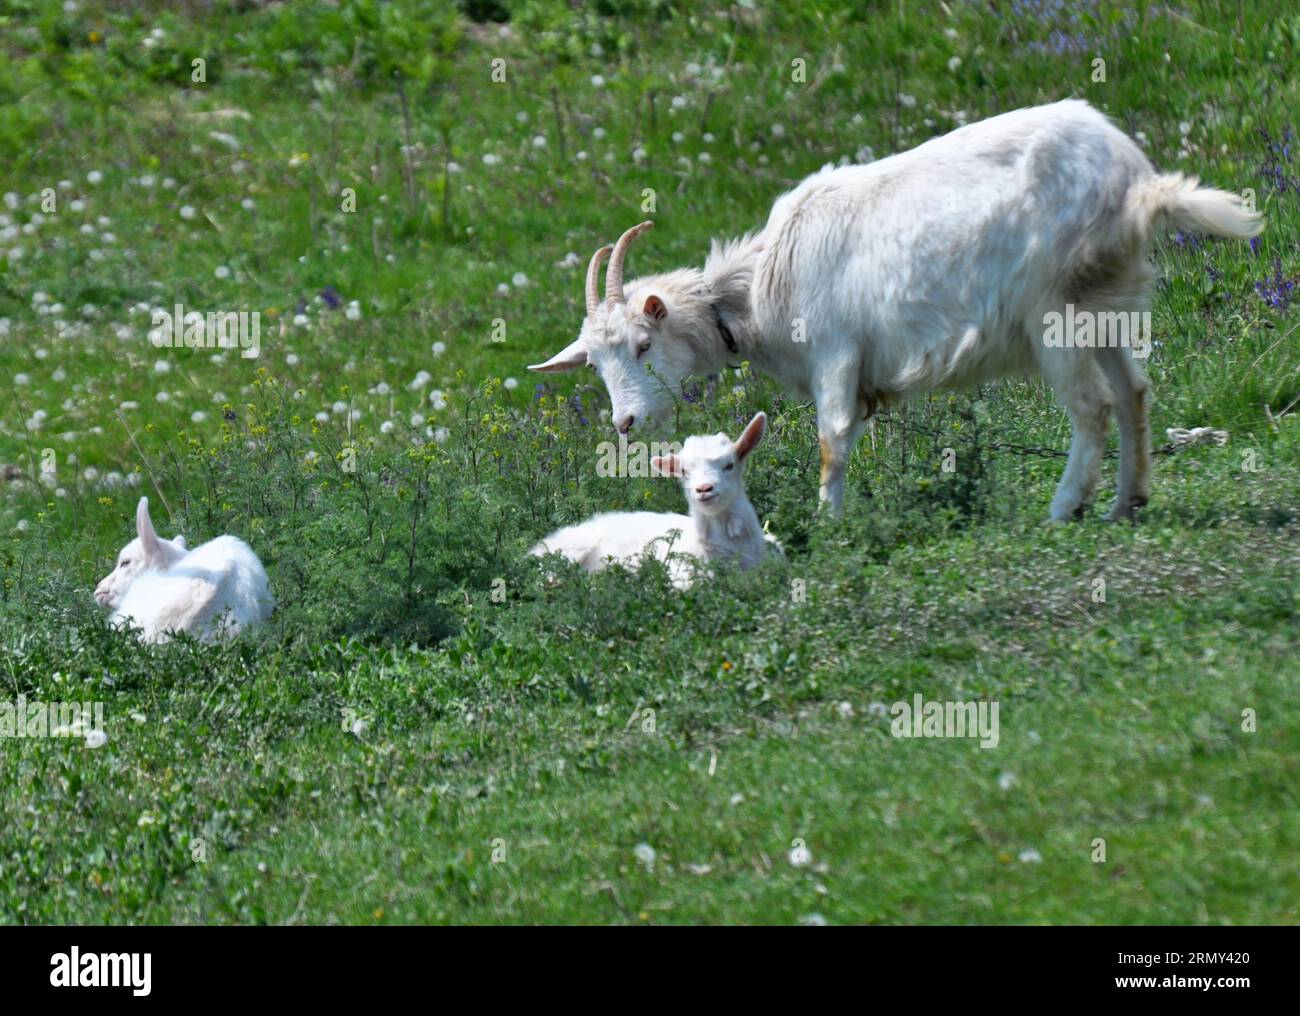 Une chèvre domestique tombe dans une cour rurale Banque D'Images